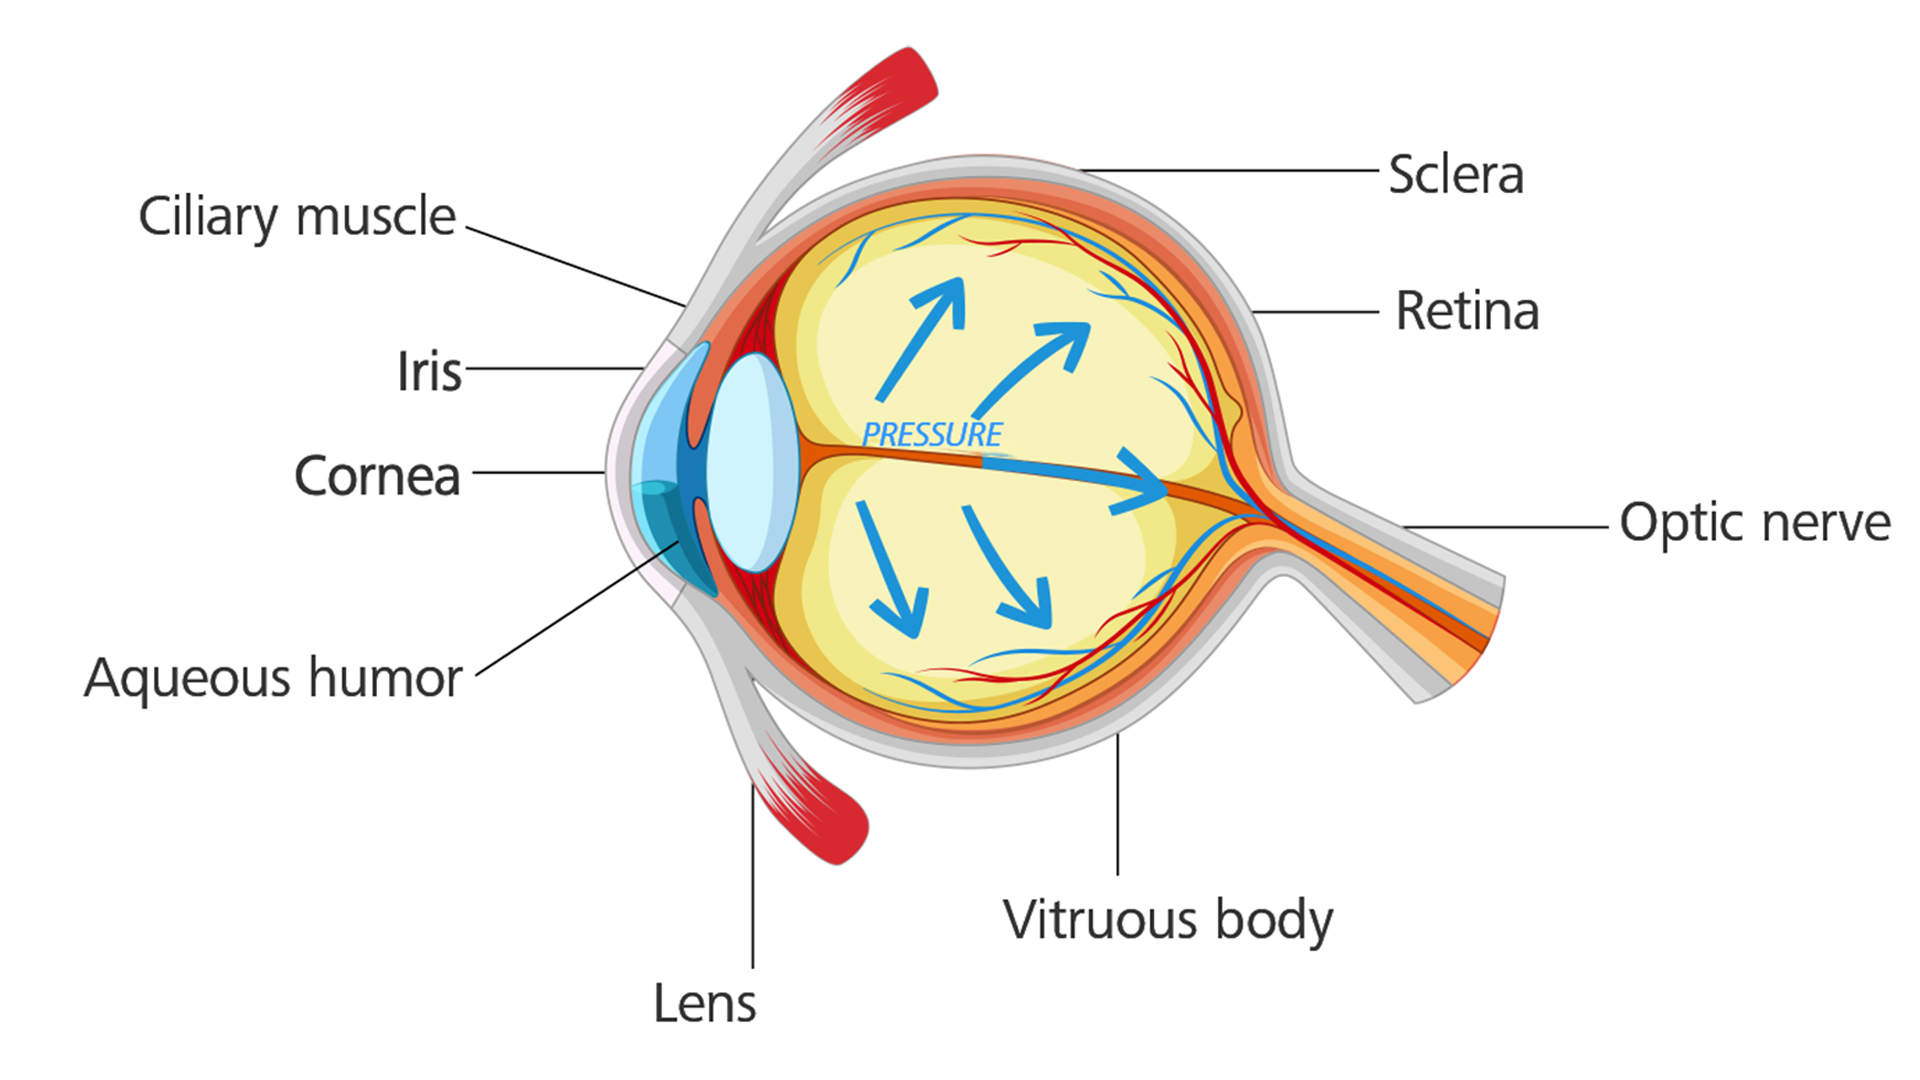 Øye med glaukom: Øyetrykket bygges opp og gjør skader på den optiske nerven.